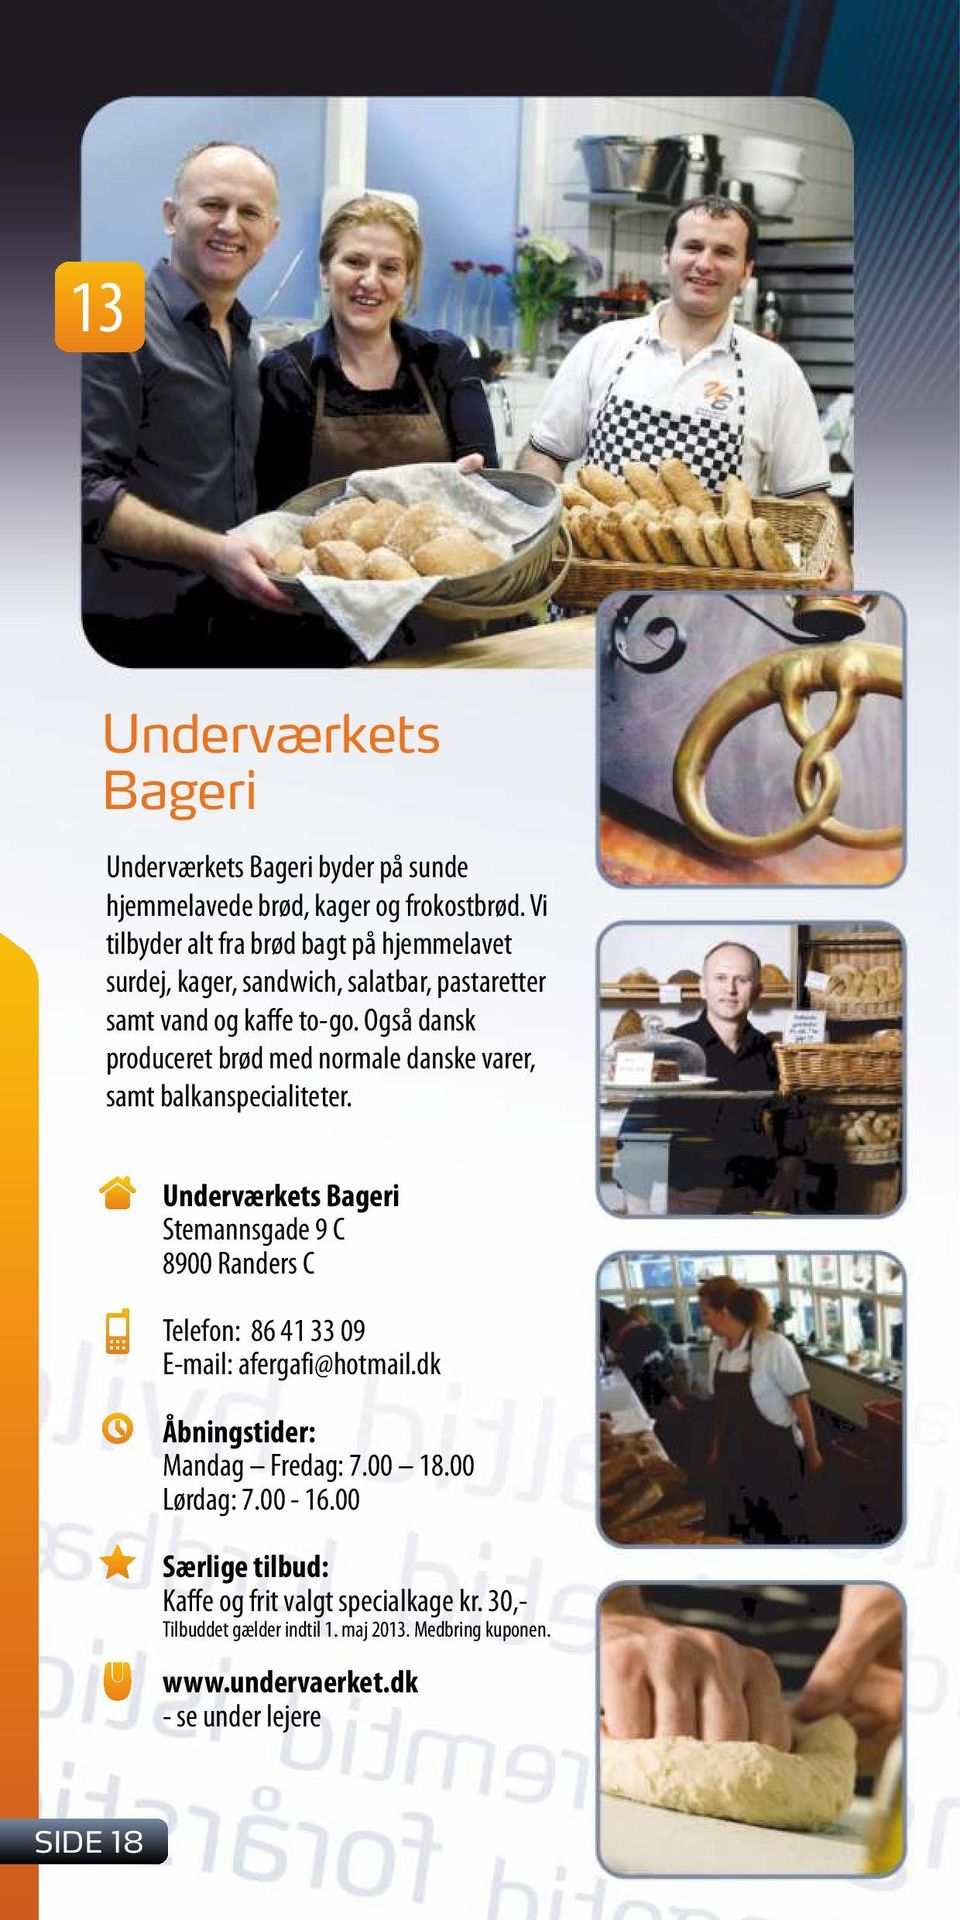 Også dansk produceret brød med normale danske varer, samt balkanspecialiteter.